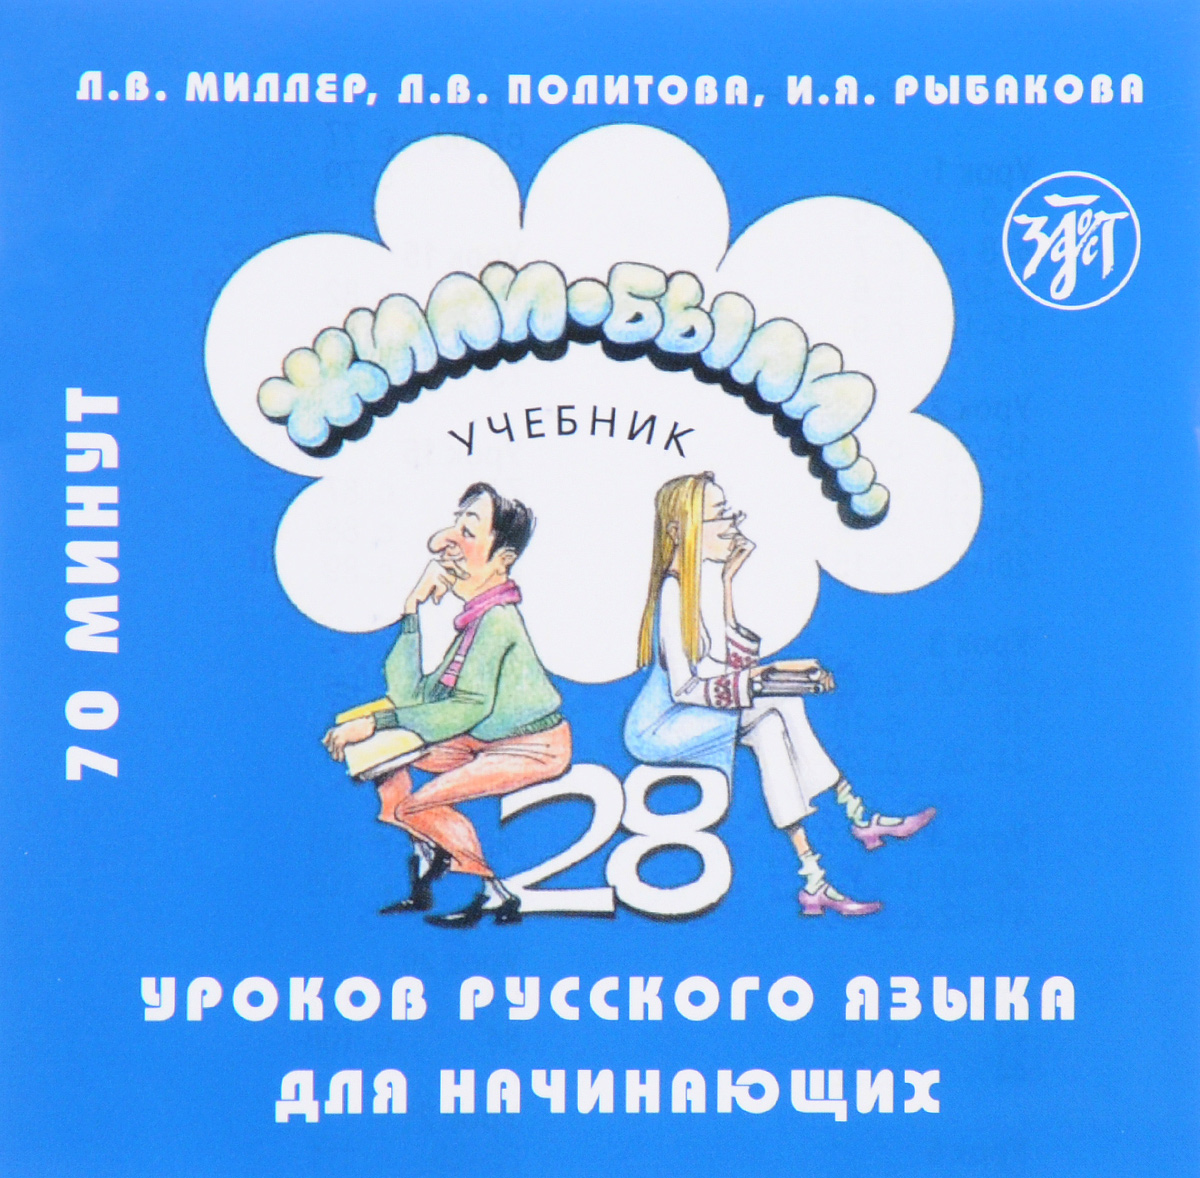 Жили-были... 28 уроков русского языка для начинающих. Учебник (аудиокурс на CD)